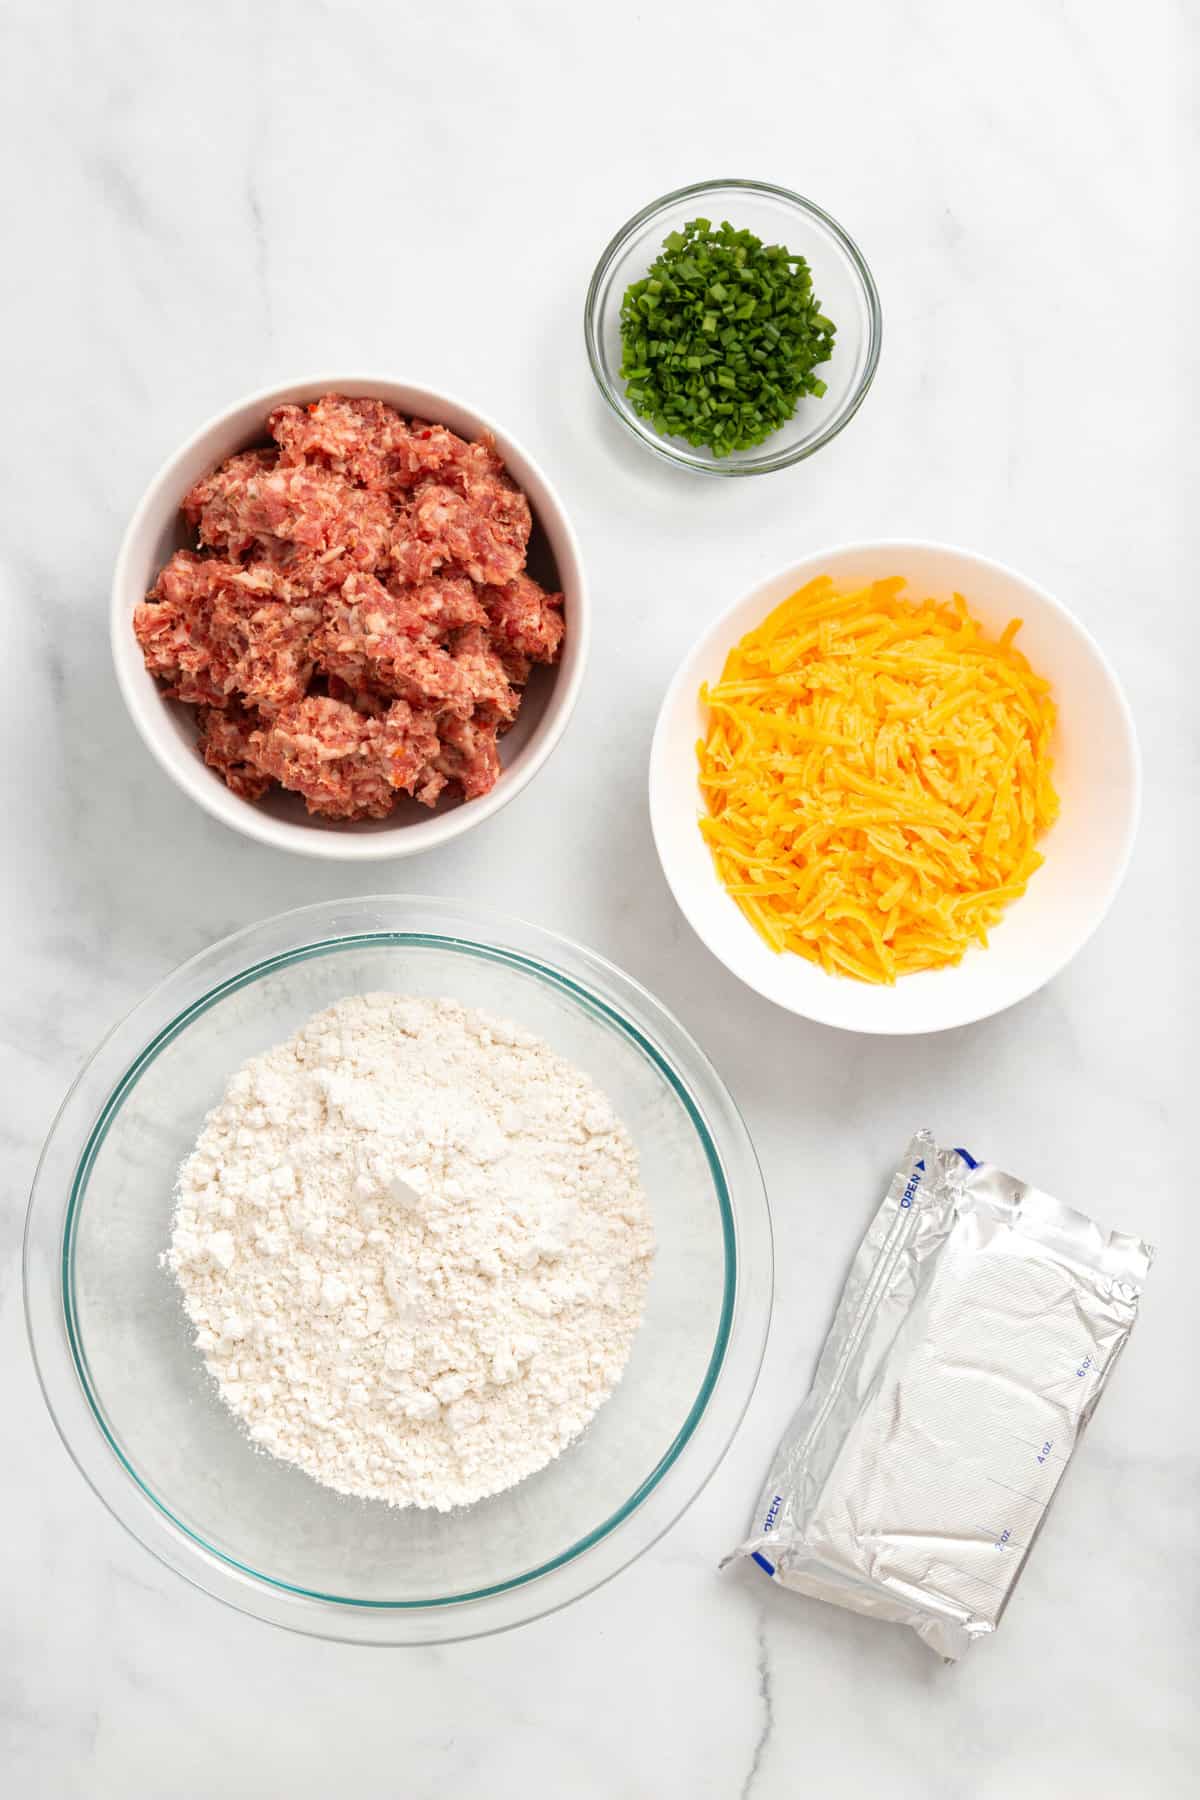 ingredients to make cream cheese sausage balls. 